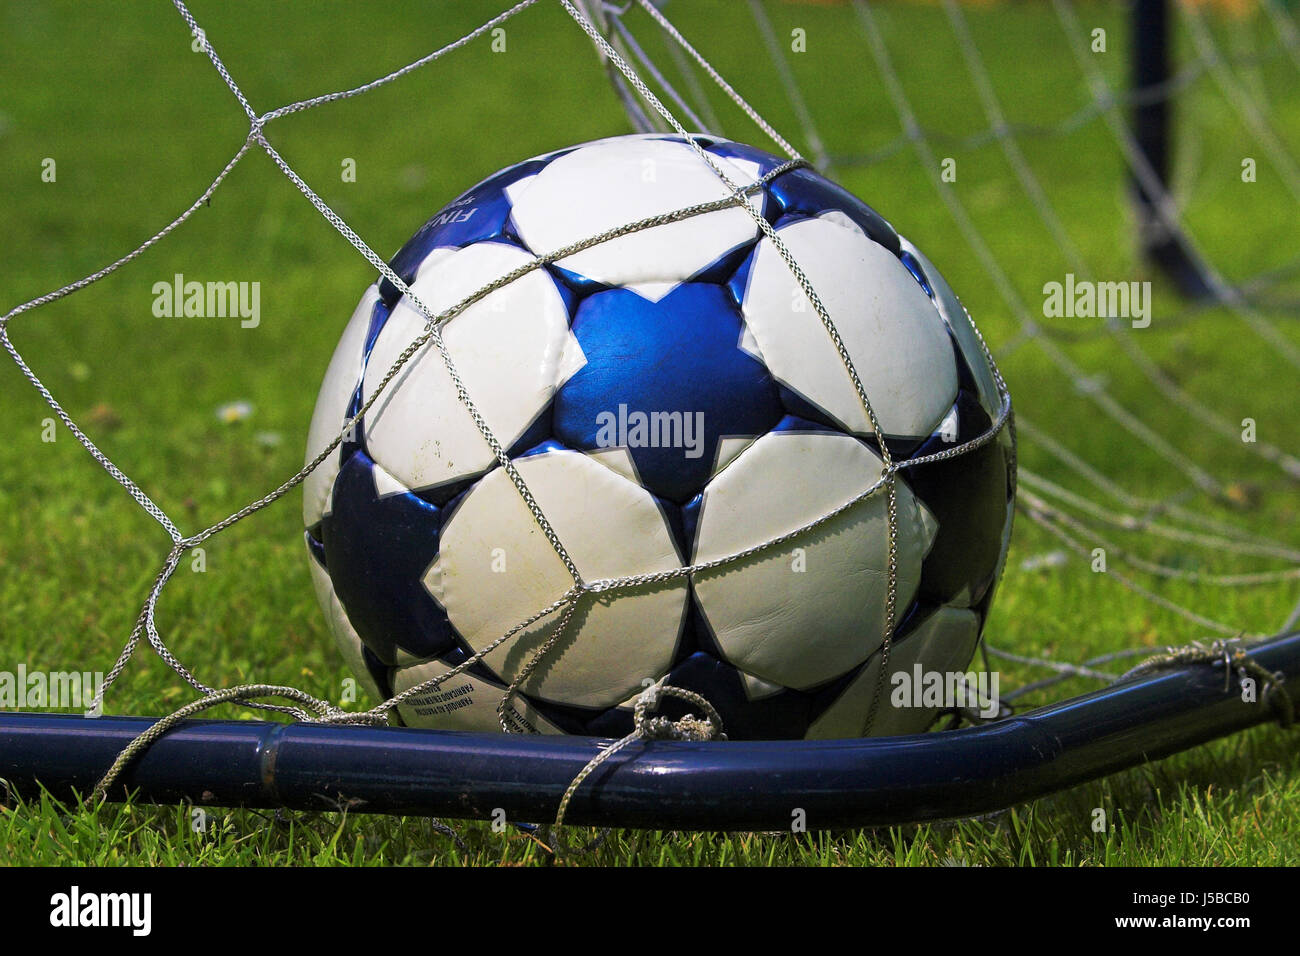 sport sports ball world championship soccer football fuball-weltmeisterschaft Stock Photo